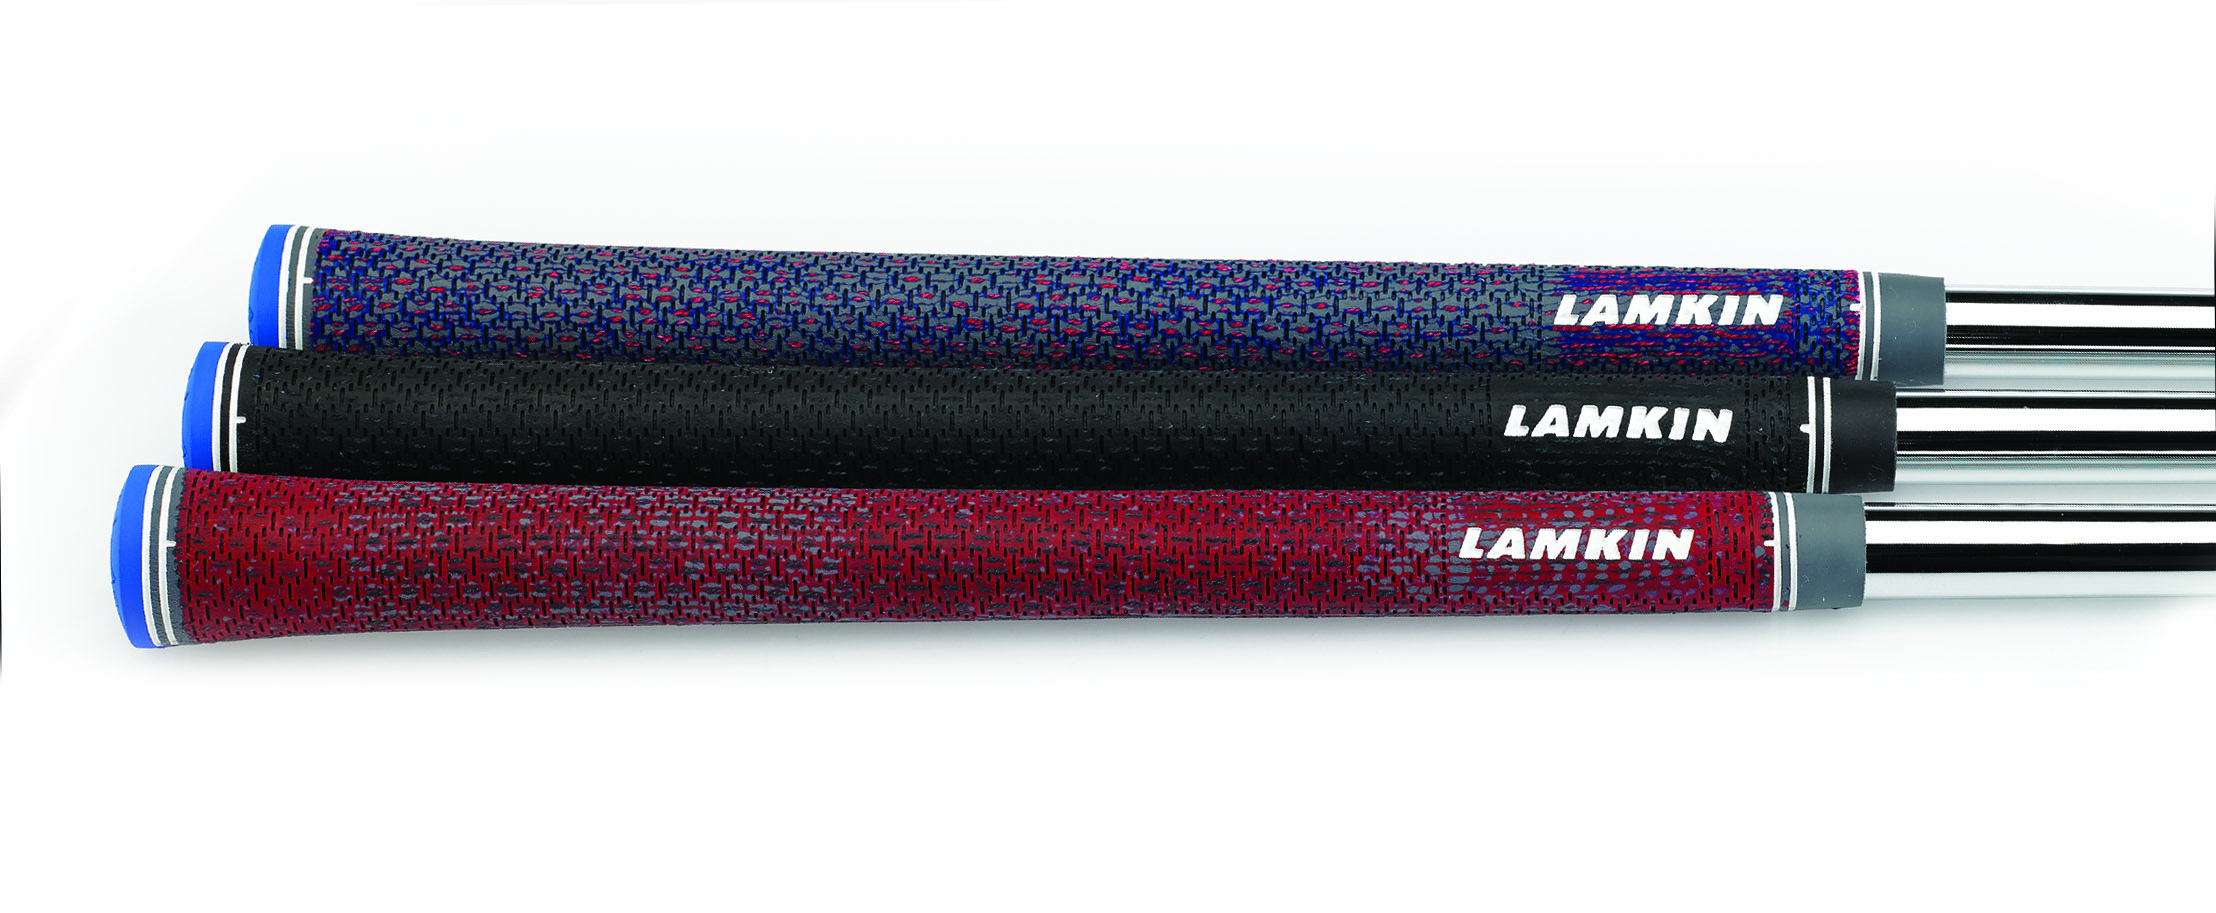 Lamkin unveils new UTx Grips